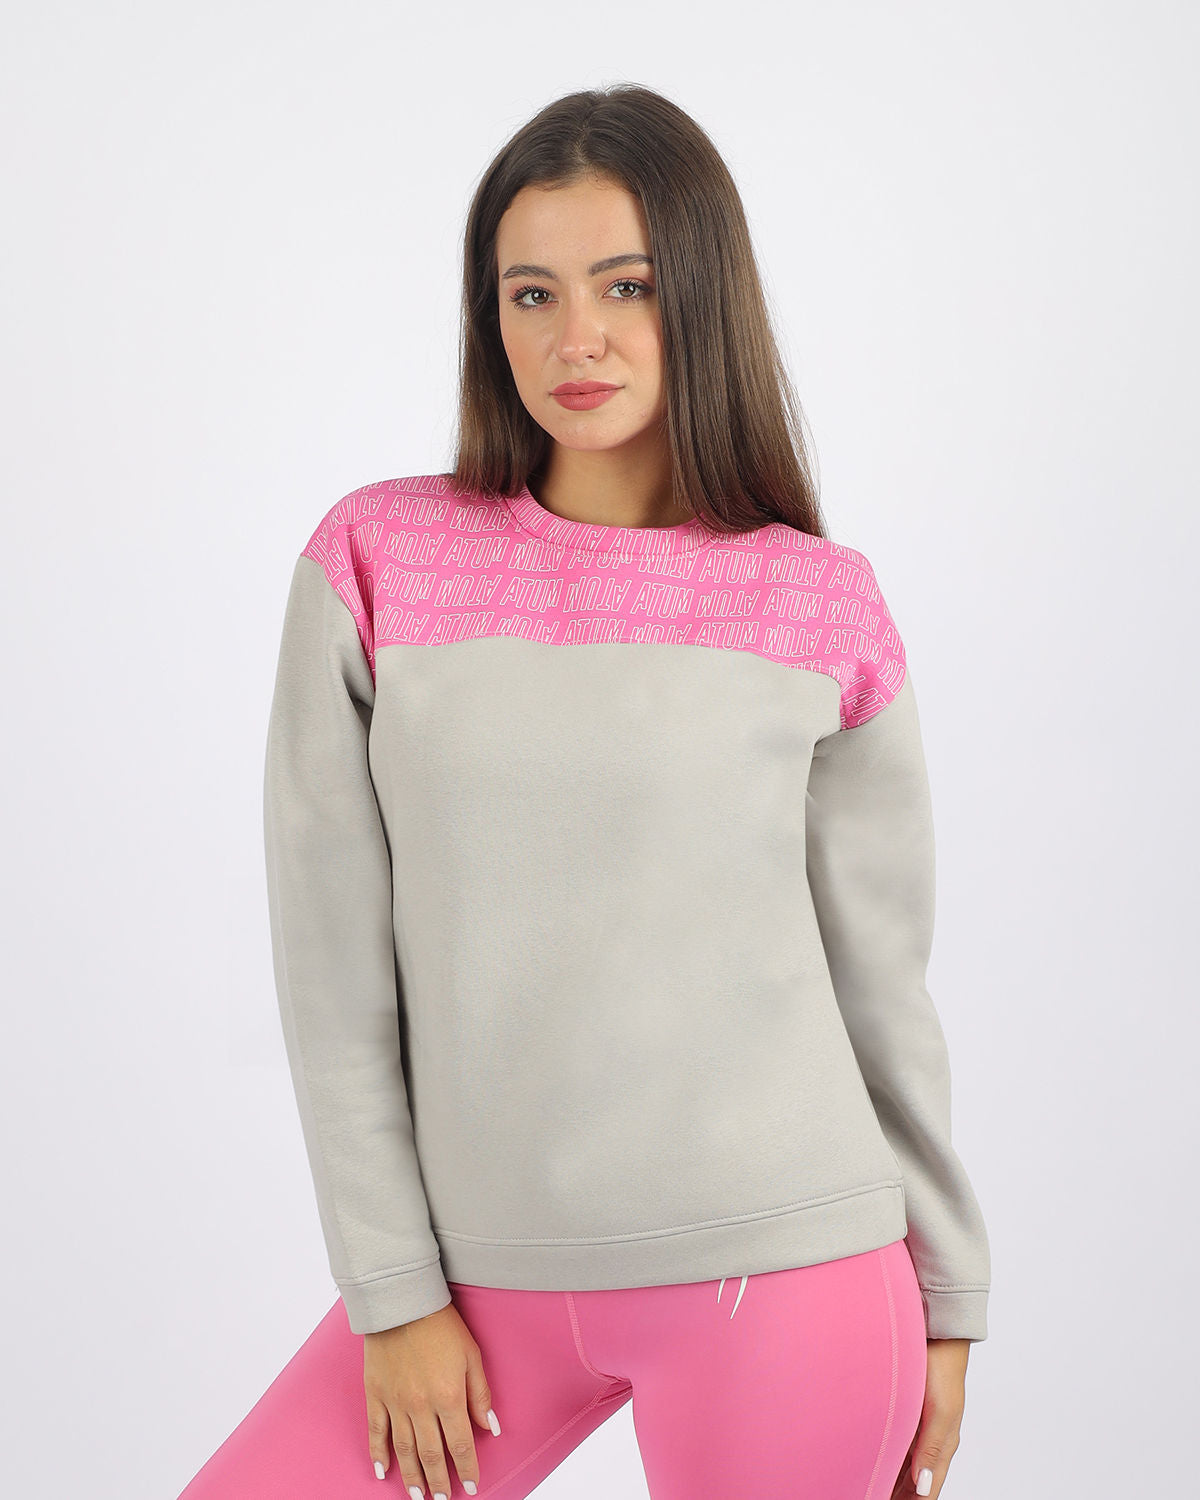 Atum Women's Sweatshirt